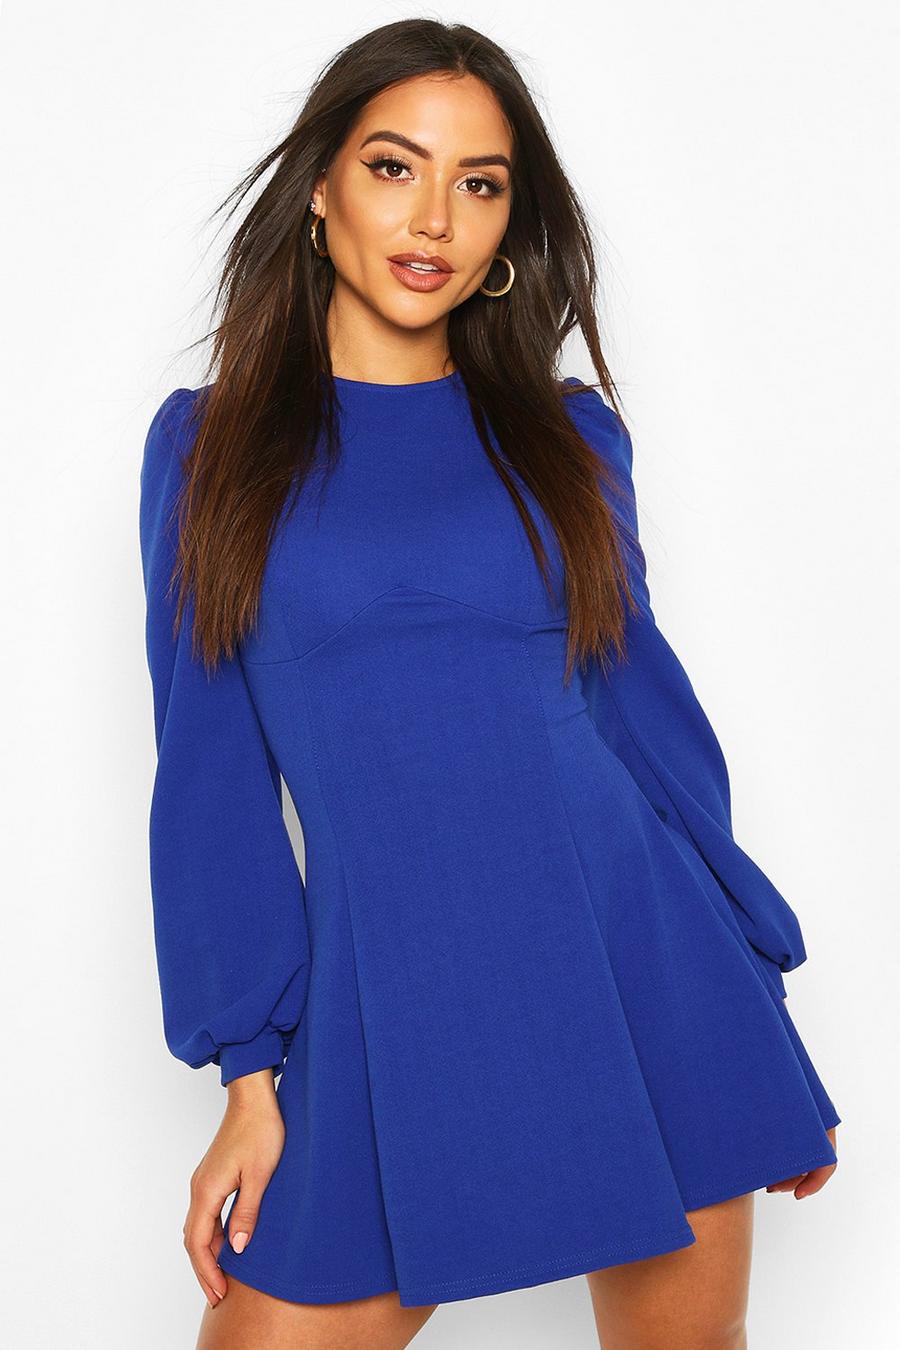 קובלט blue שמלת סקייטר עם עיטור בחזה ושרוולי בלוזון